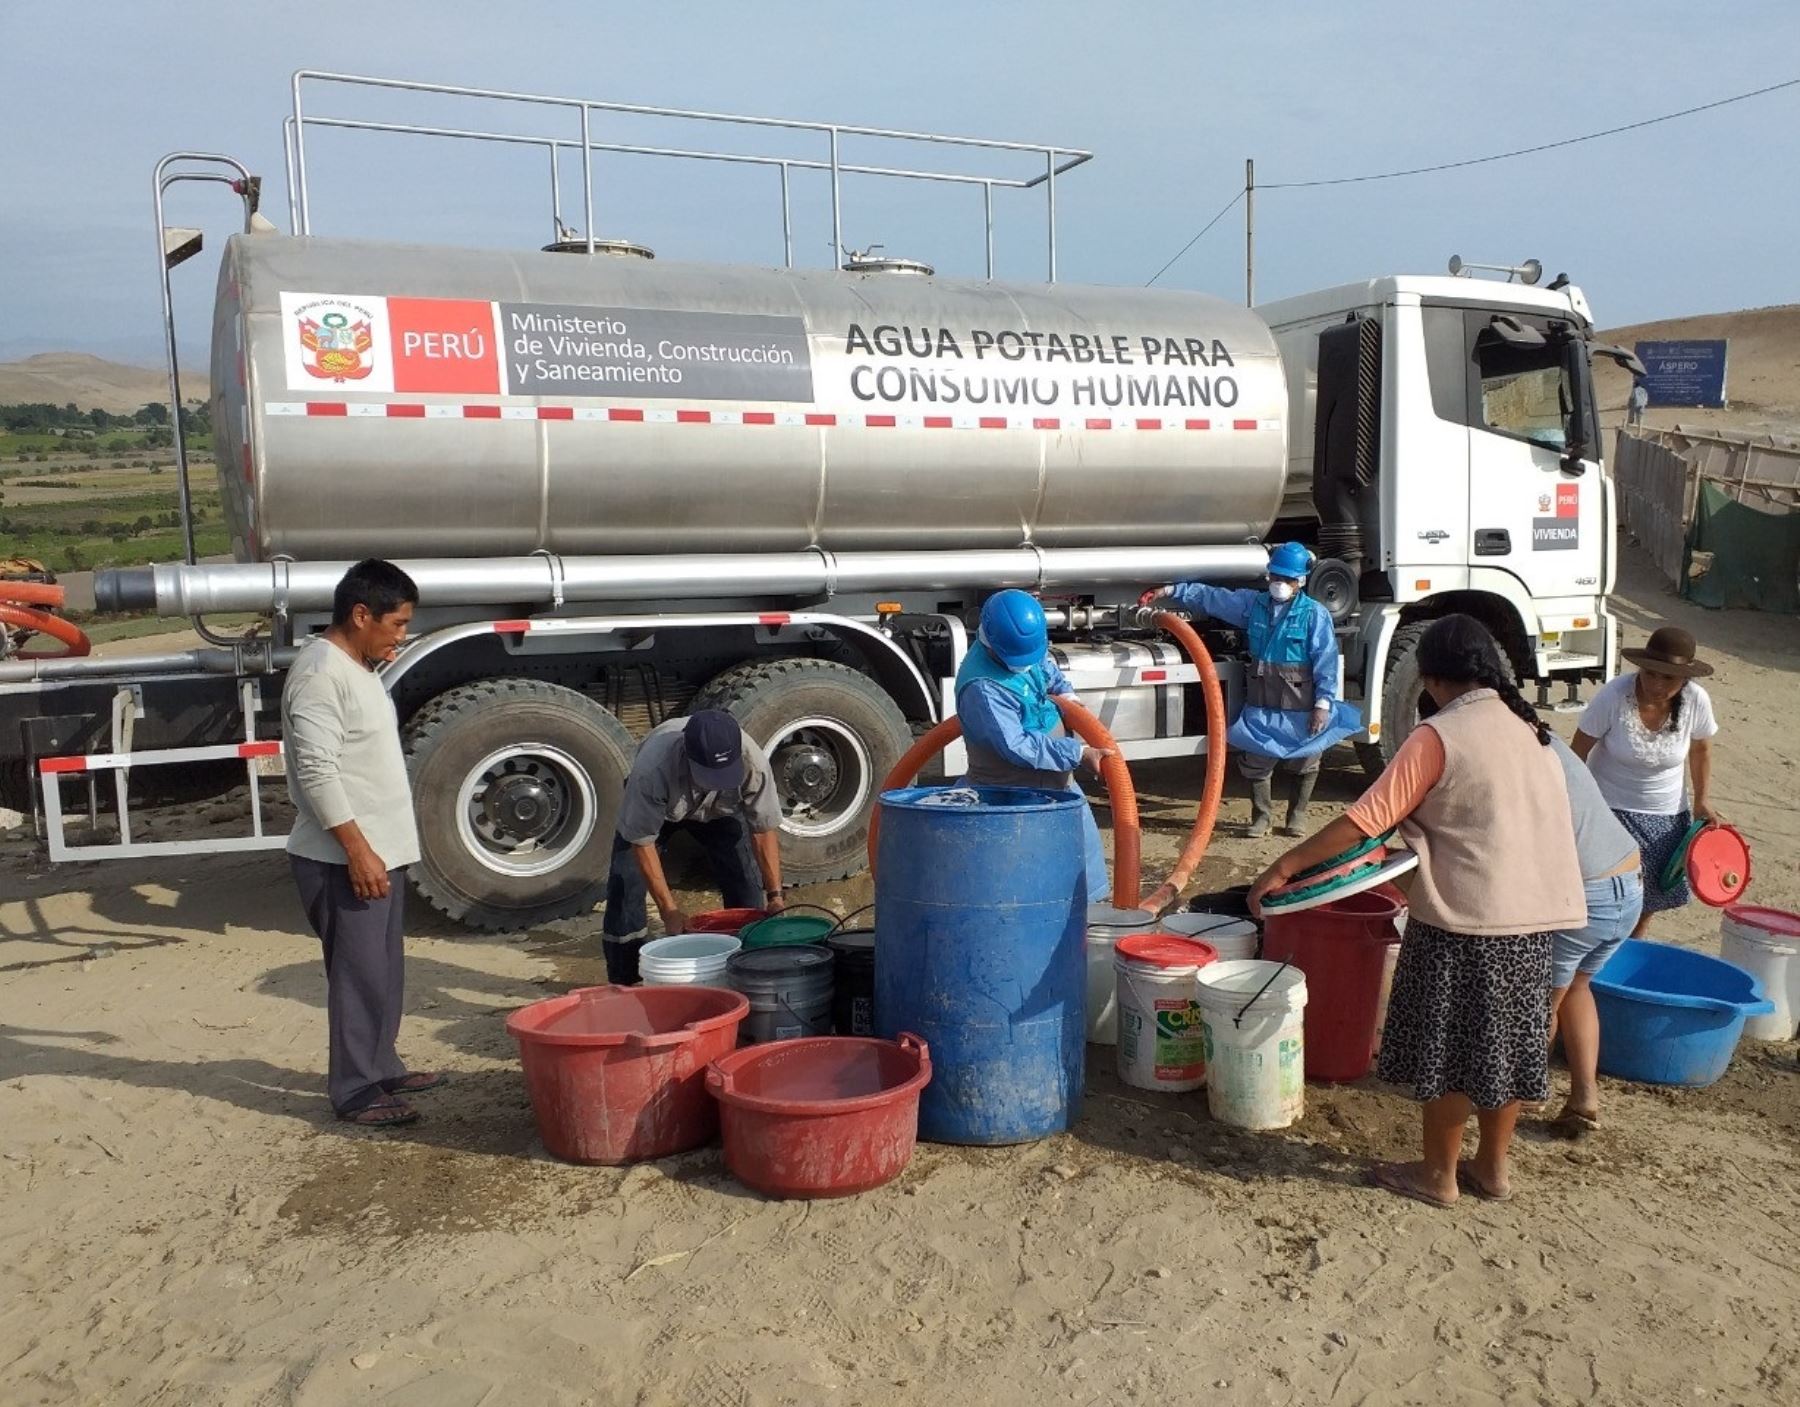 Cerca de 5 millones de peruanos en situación vulnerable accedieron al agua potable de forma gratuita gracias al Plan Cisterna. ANDINA/Difusión